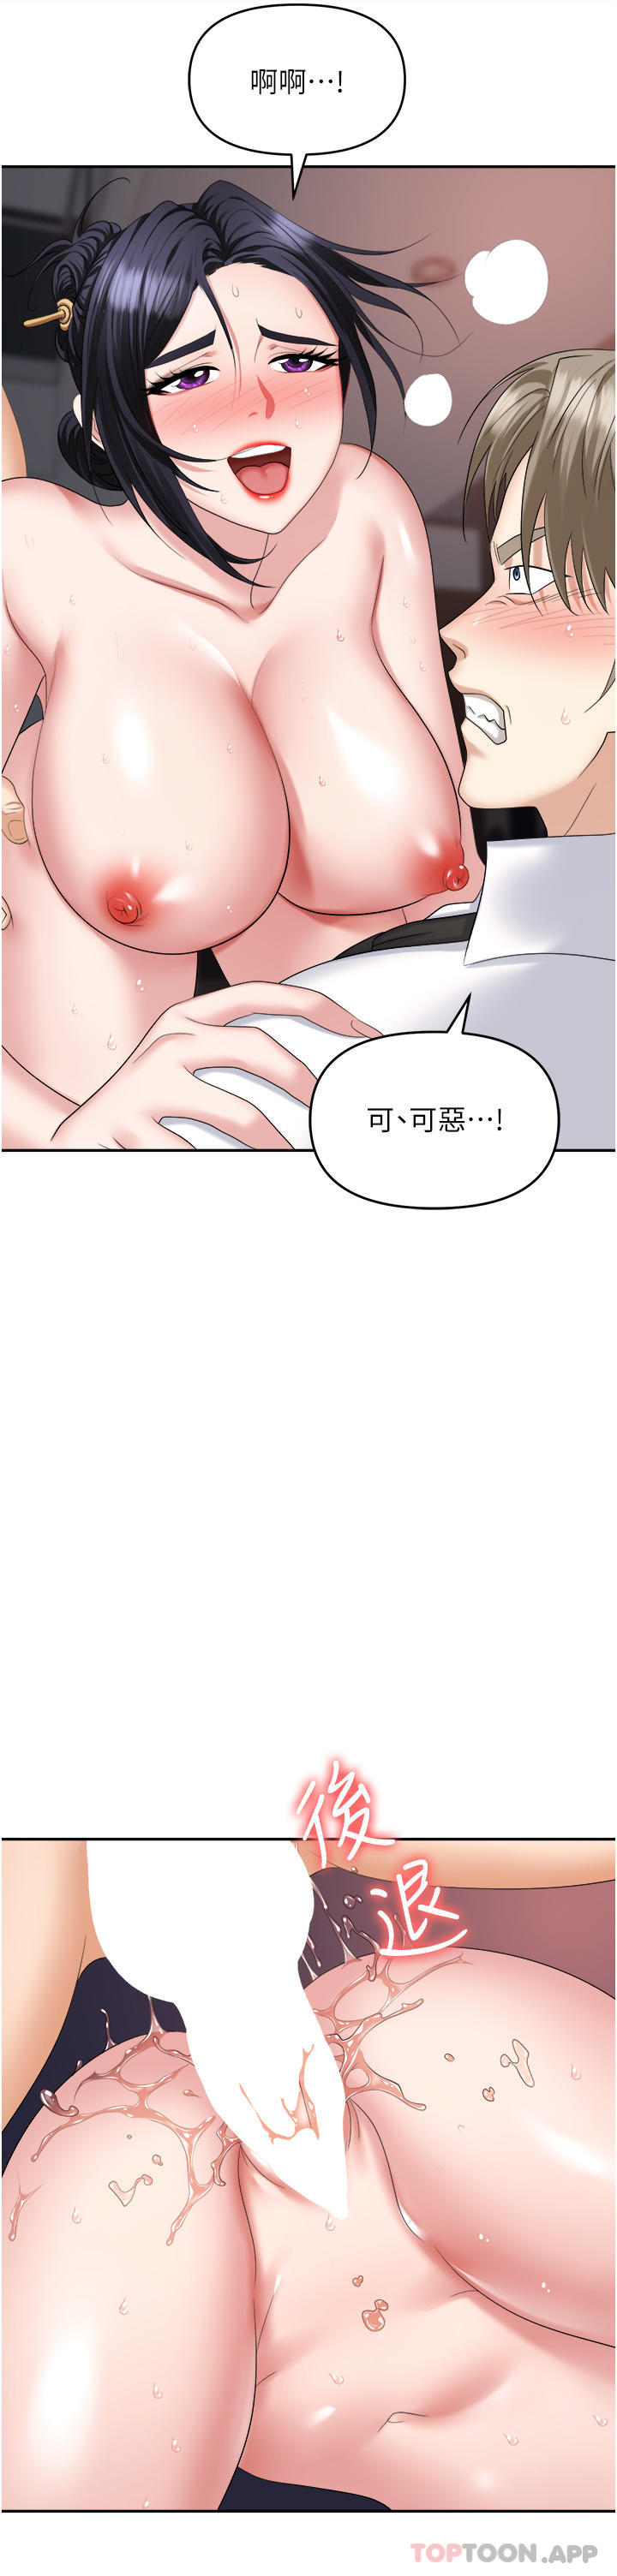 韩国污漫画 職場陷阱 第28话-在老公面前被别人上 43